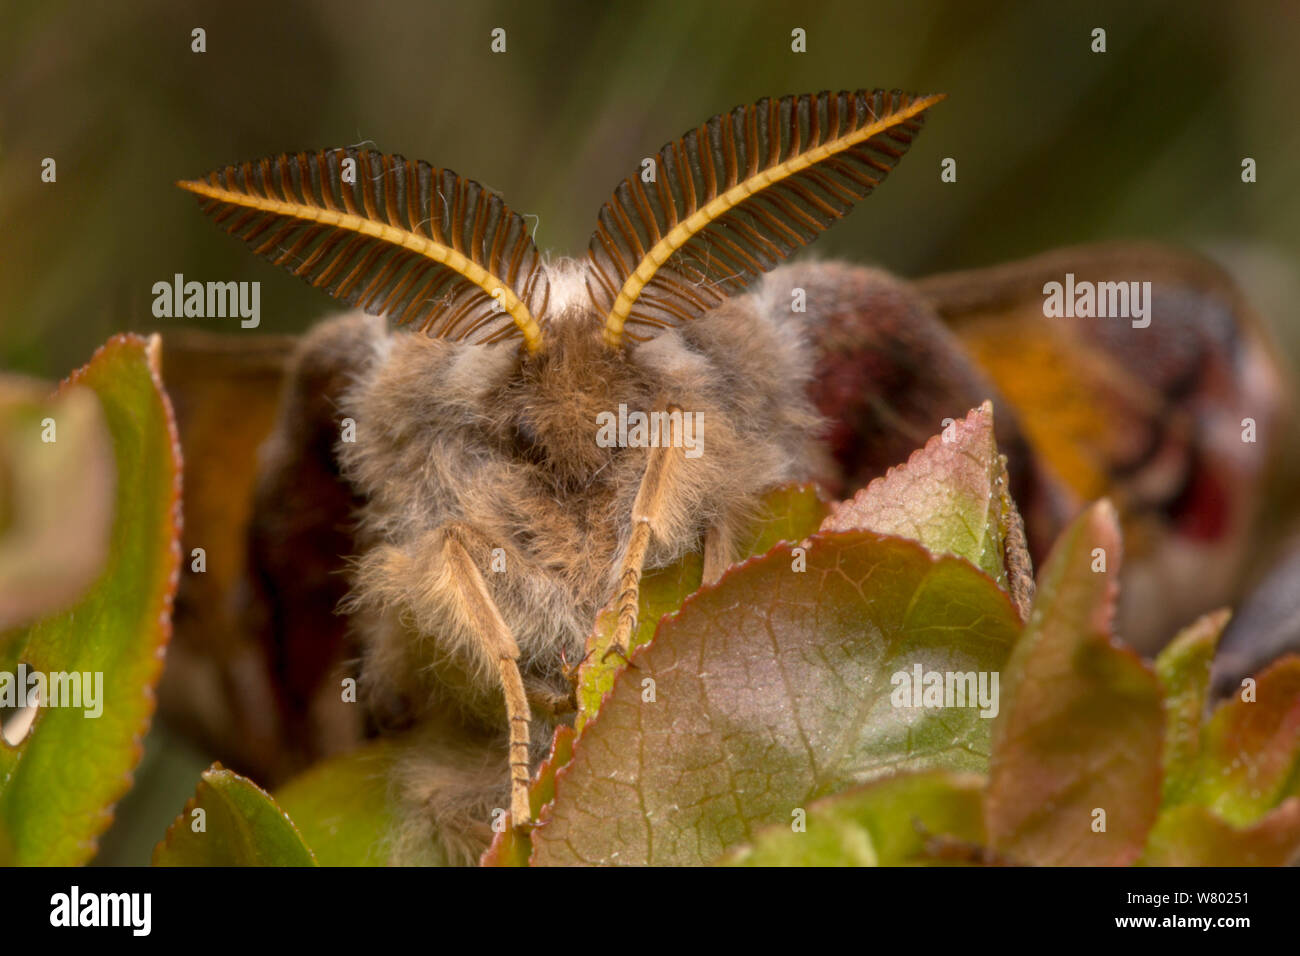 Polilla emperador (Saturnia pavonia) macho, mostrando unas antenas que él utiliza para localizar las hembras con desde grandes distancias. Peak District National Park, Reino Unido. De abril. Foto de stock